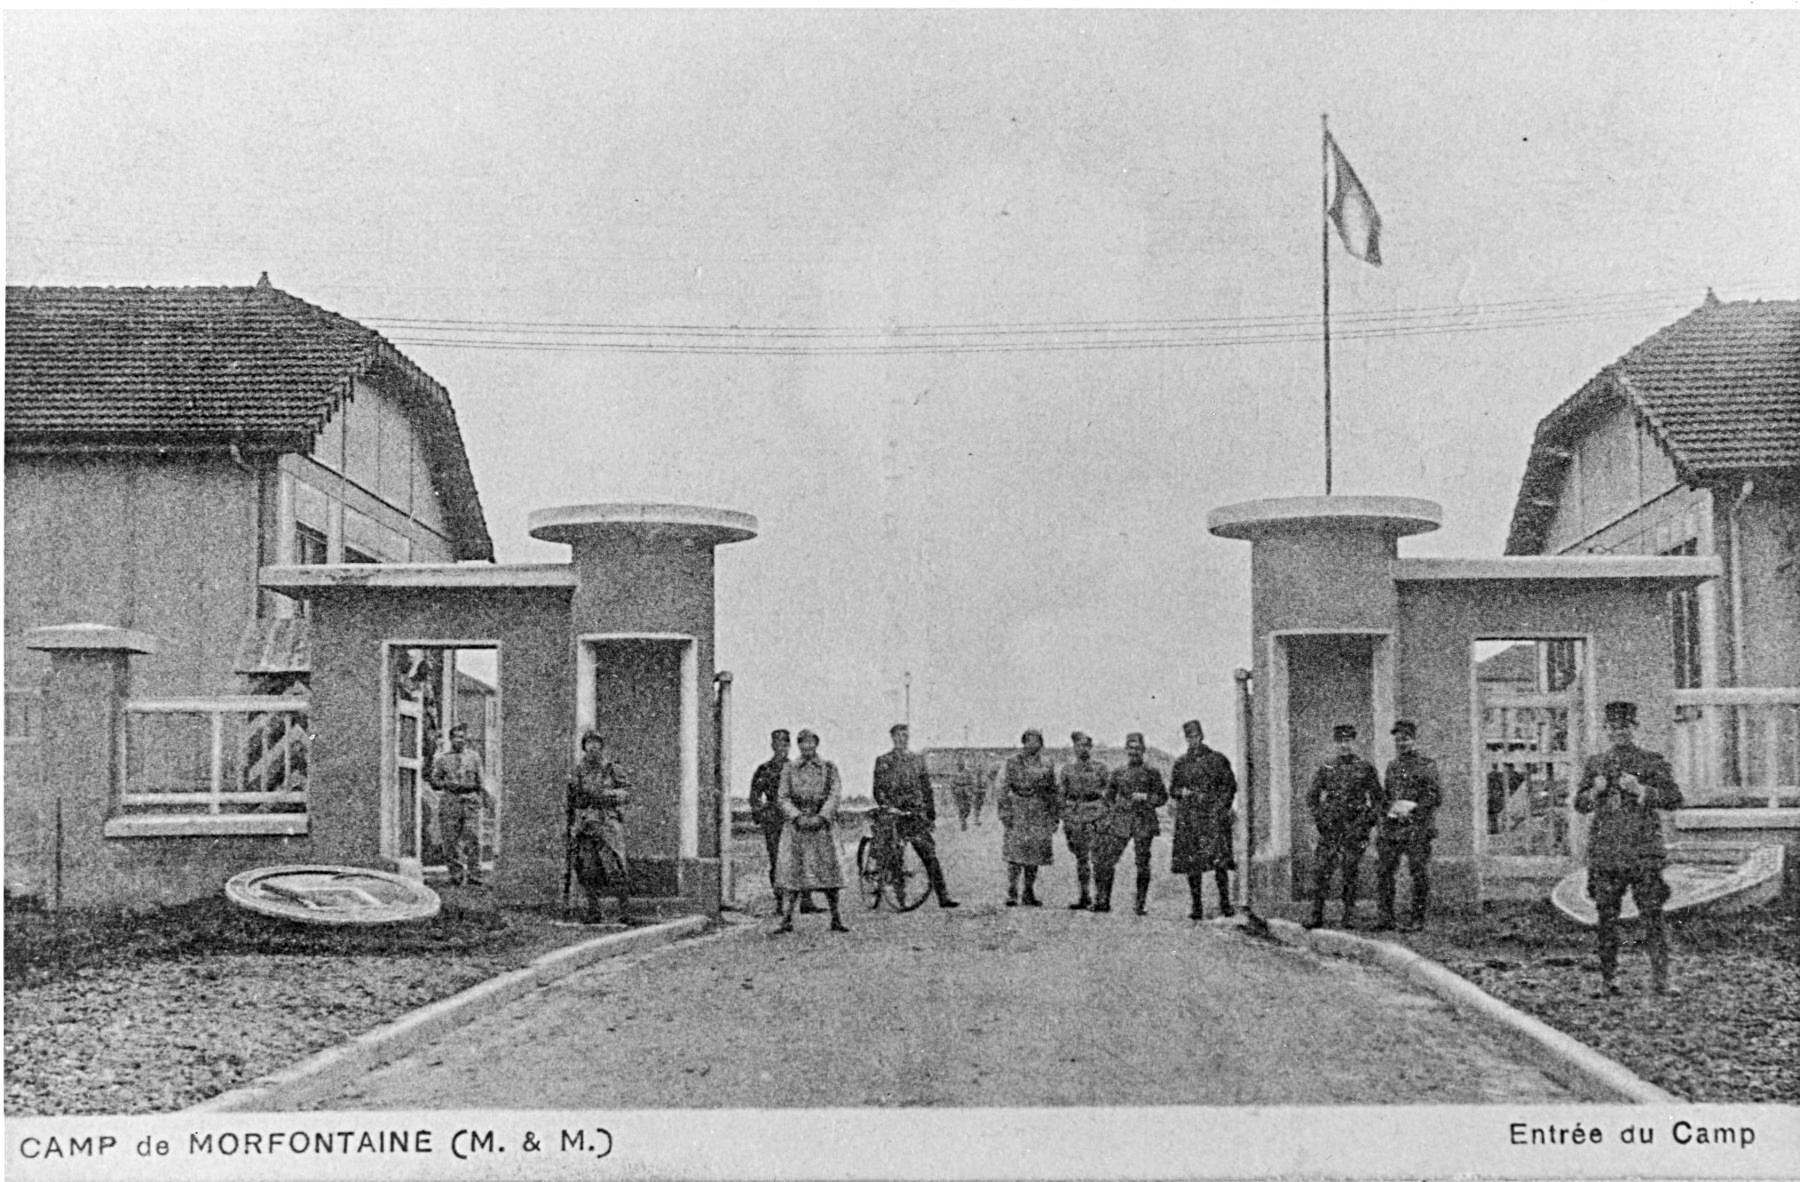 Ligne Maginot - MORFONTAINE - (Camp de sureté) - Entrée du camp 
Carte postale